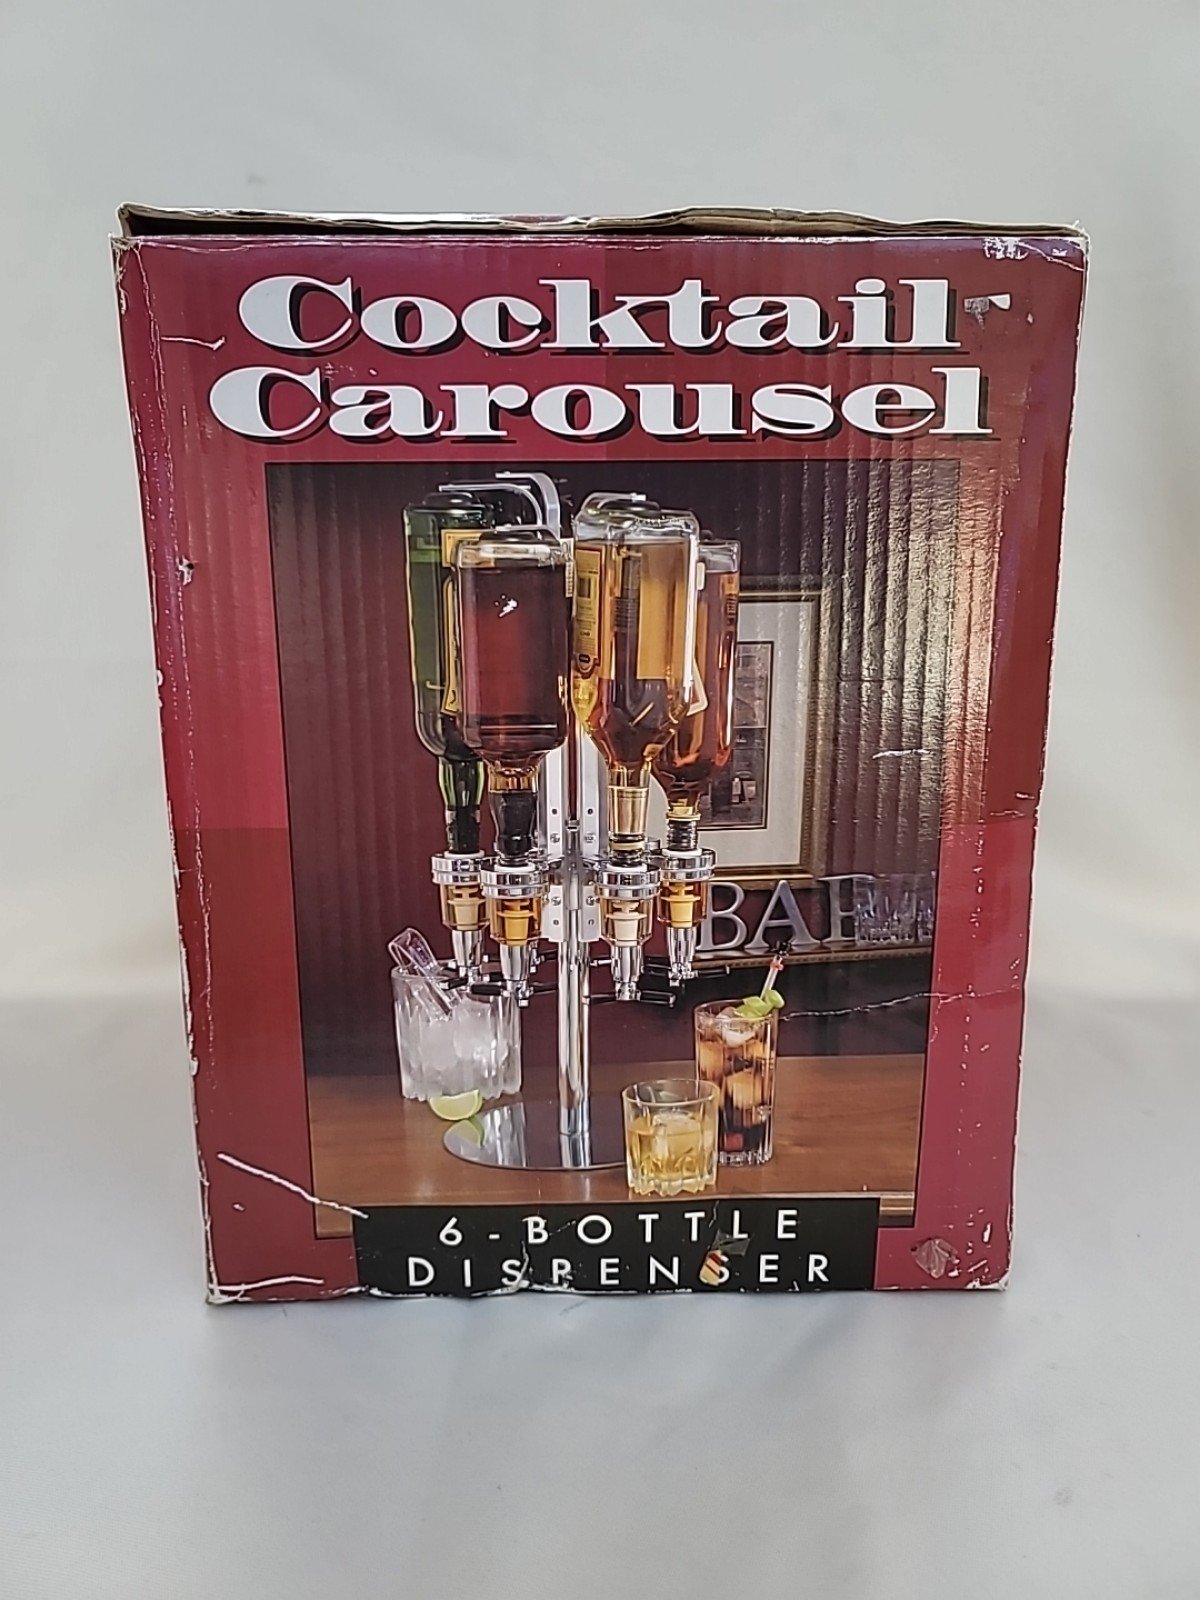 Cocktail Carousel 6 Bottle Dispenser lL6X0CKK8